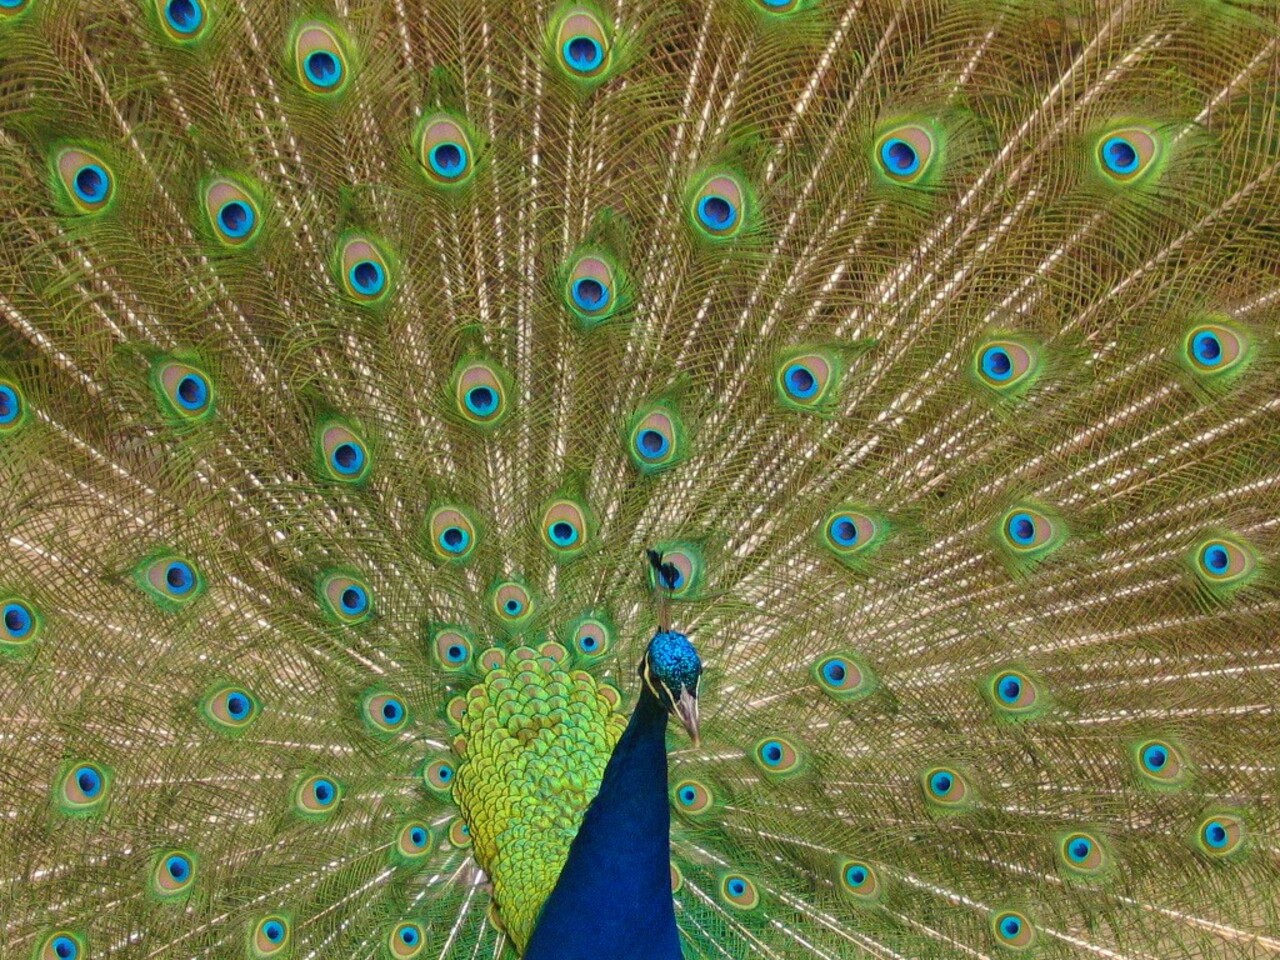 Indian peafowl Pavo cristatus